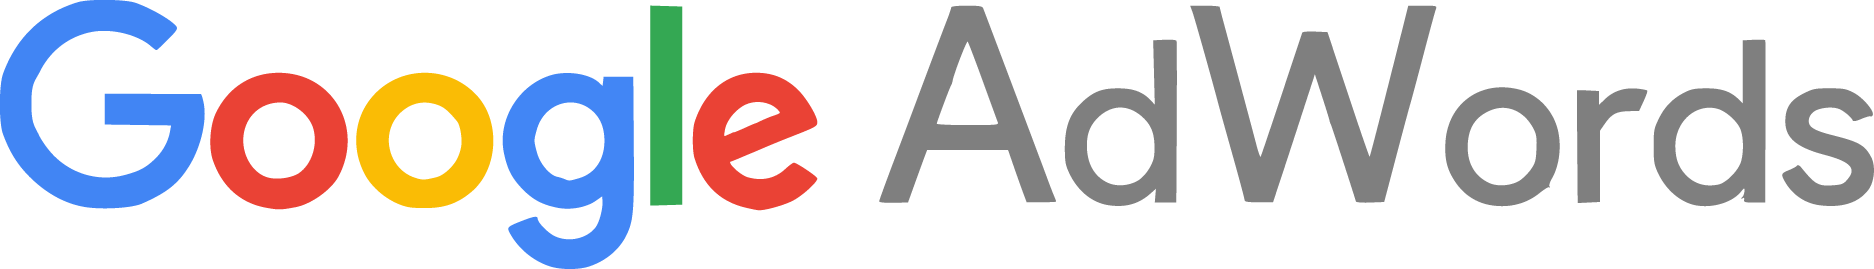 AdWords Logo - Google Adwords Logo Vector Free Download